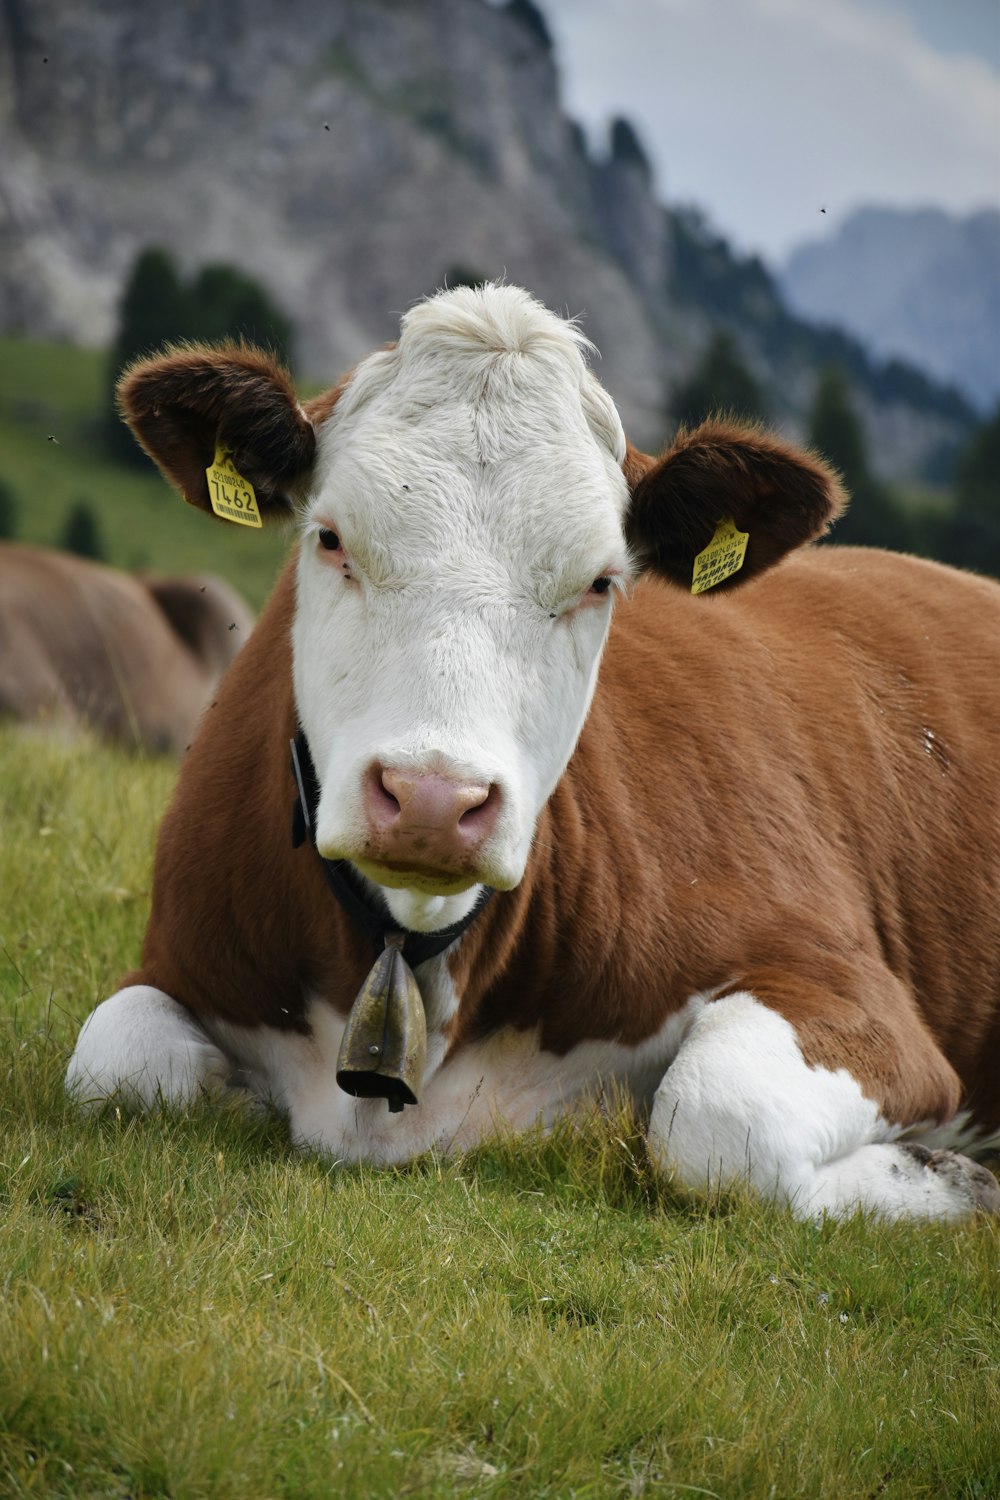 vaca marrom e branca deitada na grama verde durante o dia